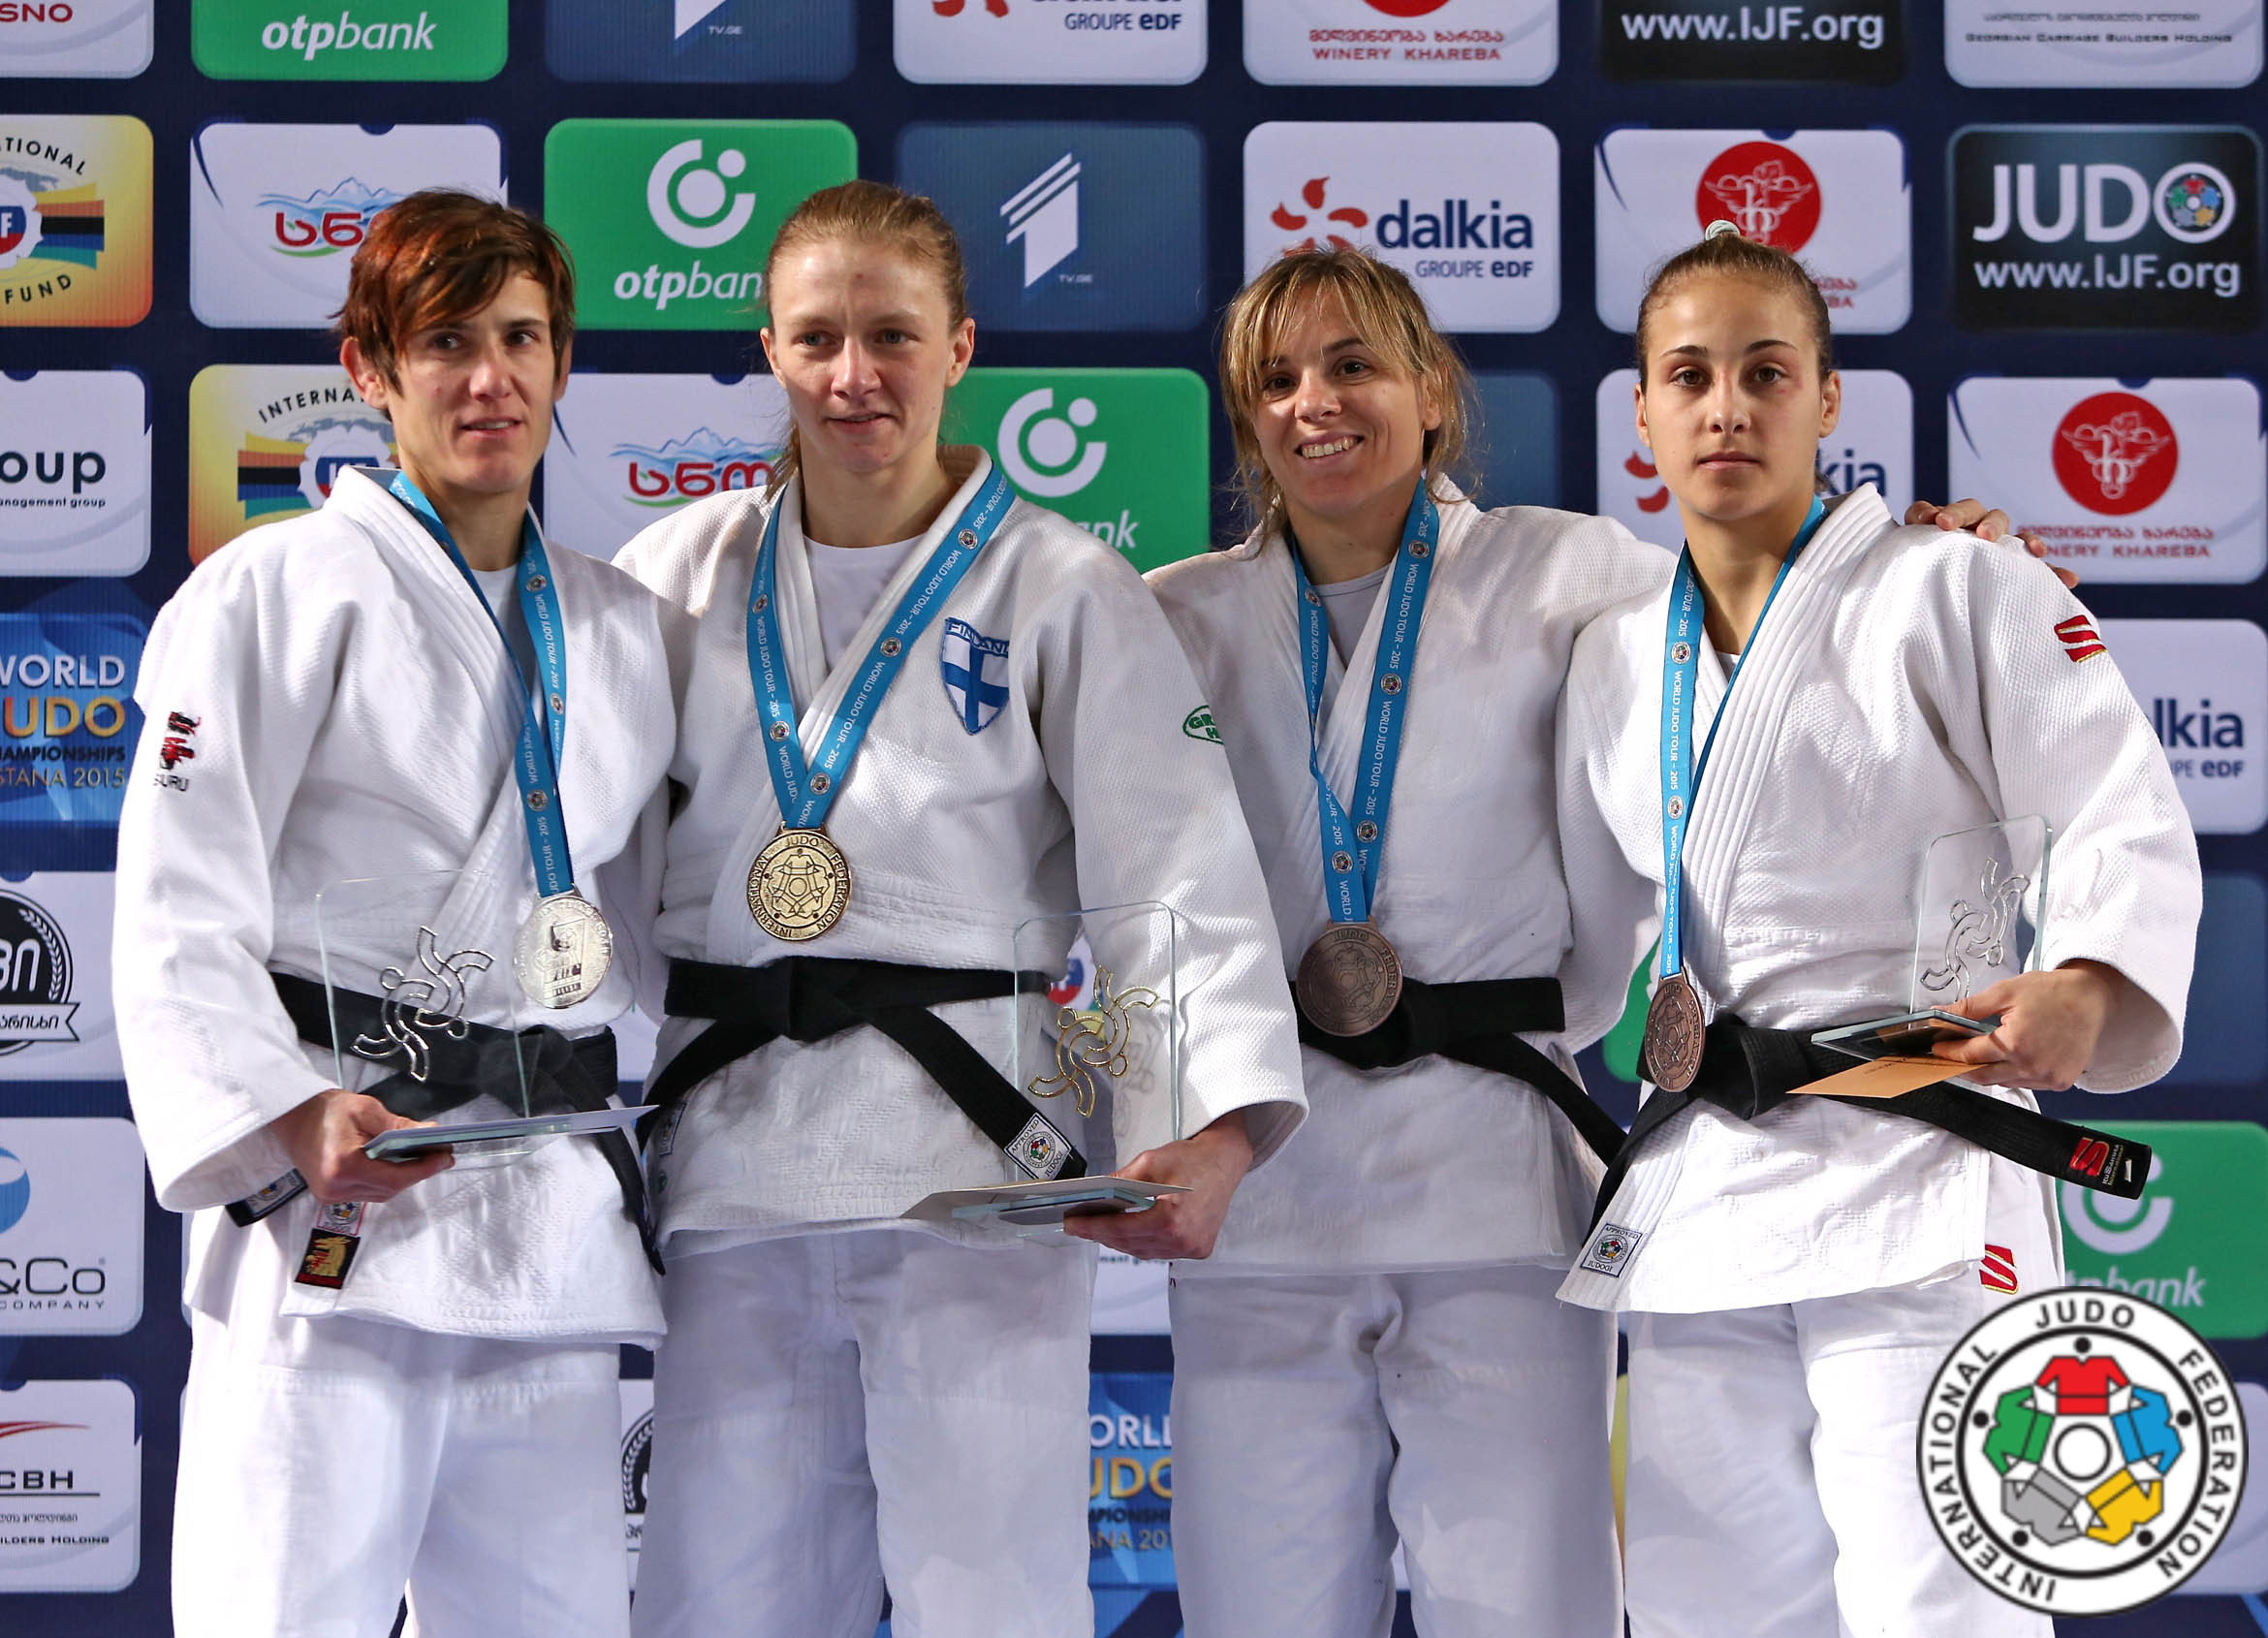 Odette Giuffrida rompe il digiuno, è bronzo nel Grand Prix a Tbilisi